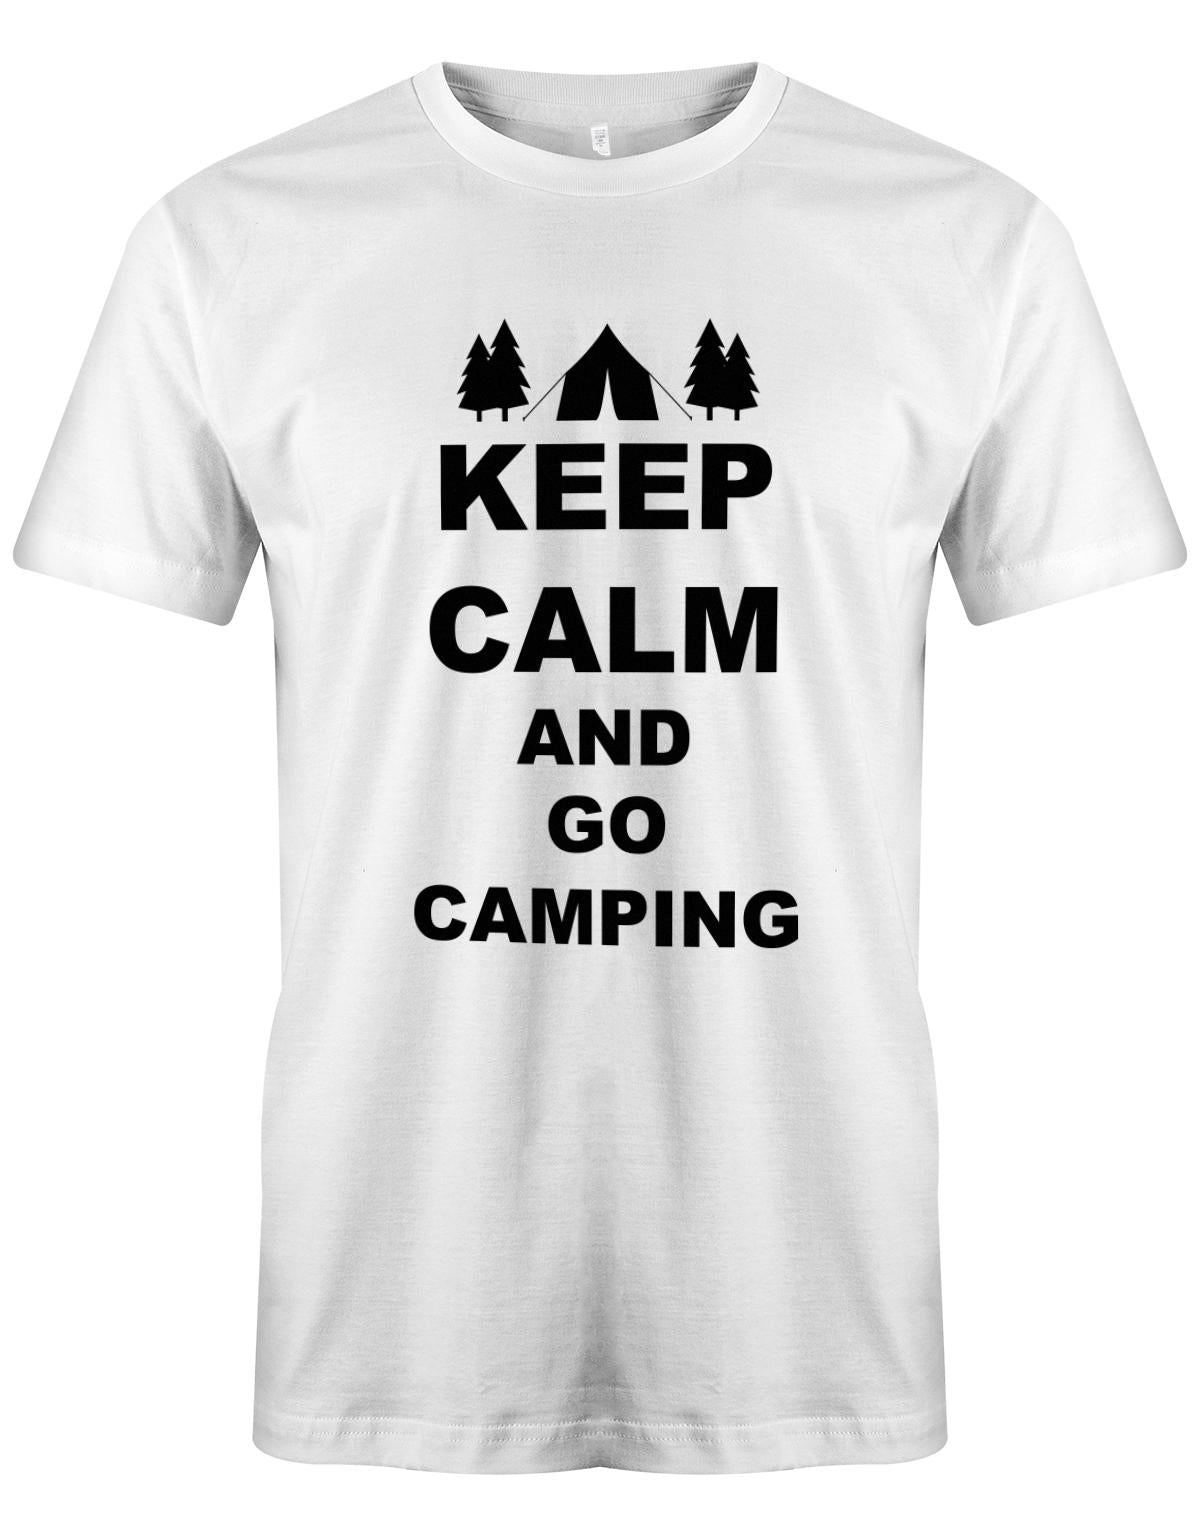 Keep-Calm-and-Go-Camping-Herren-Shirt-weiss